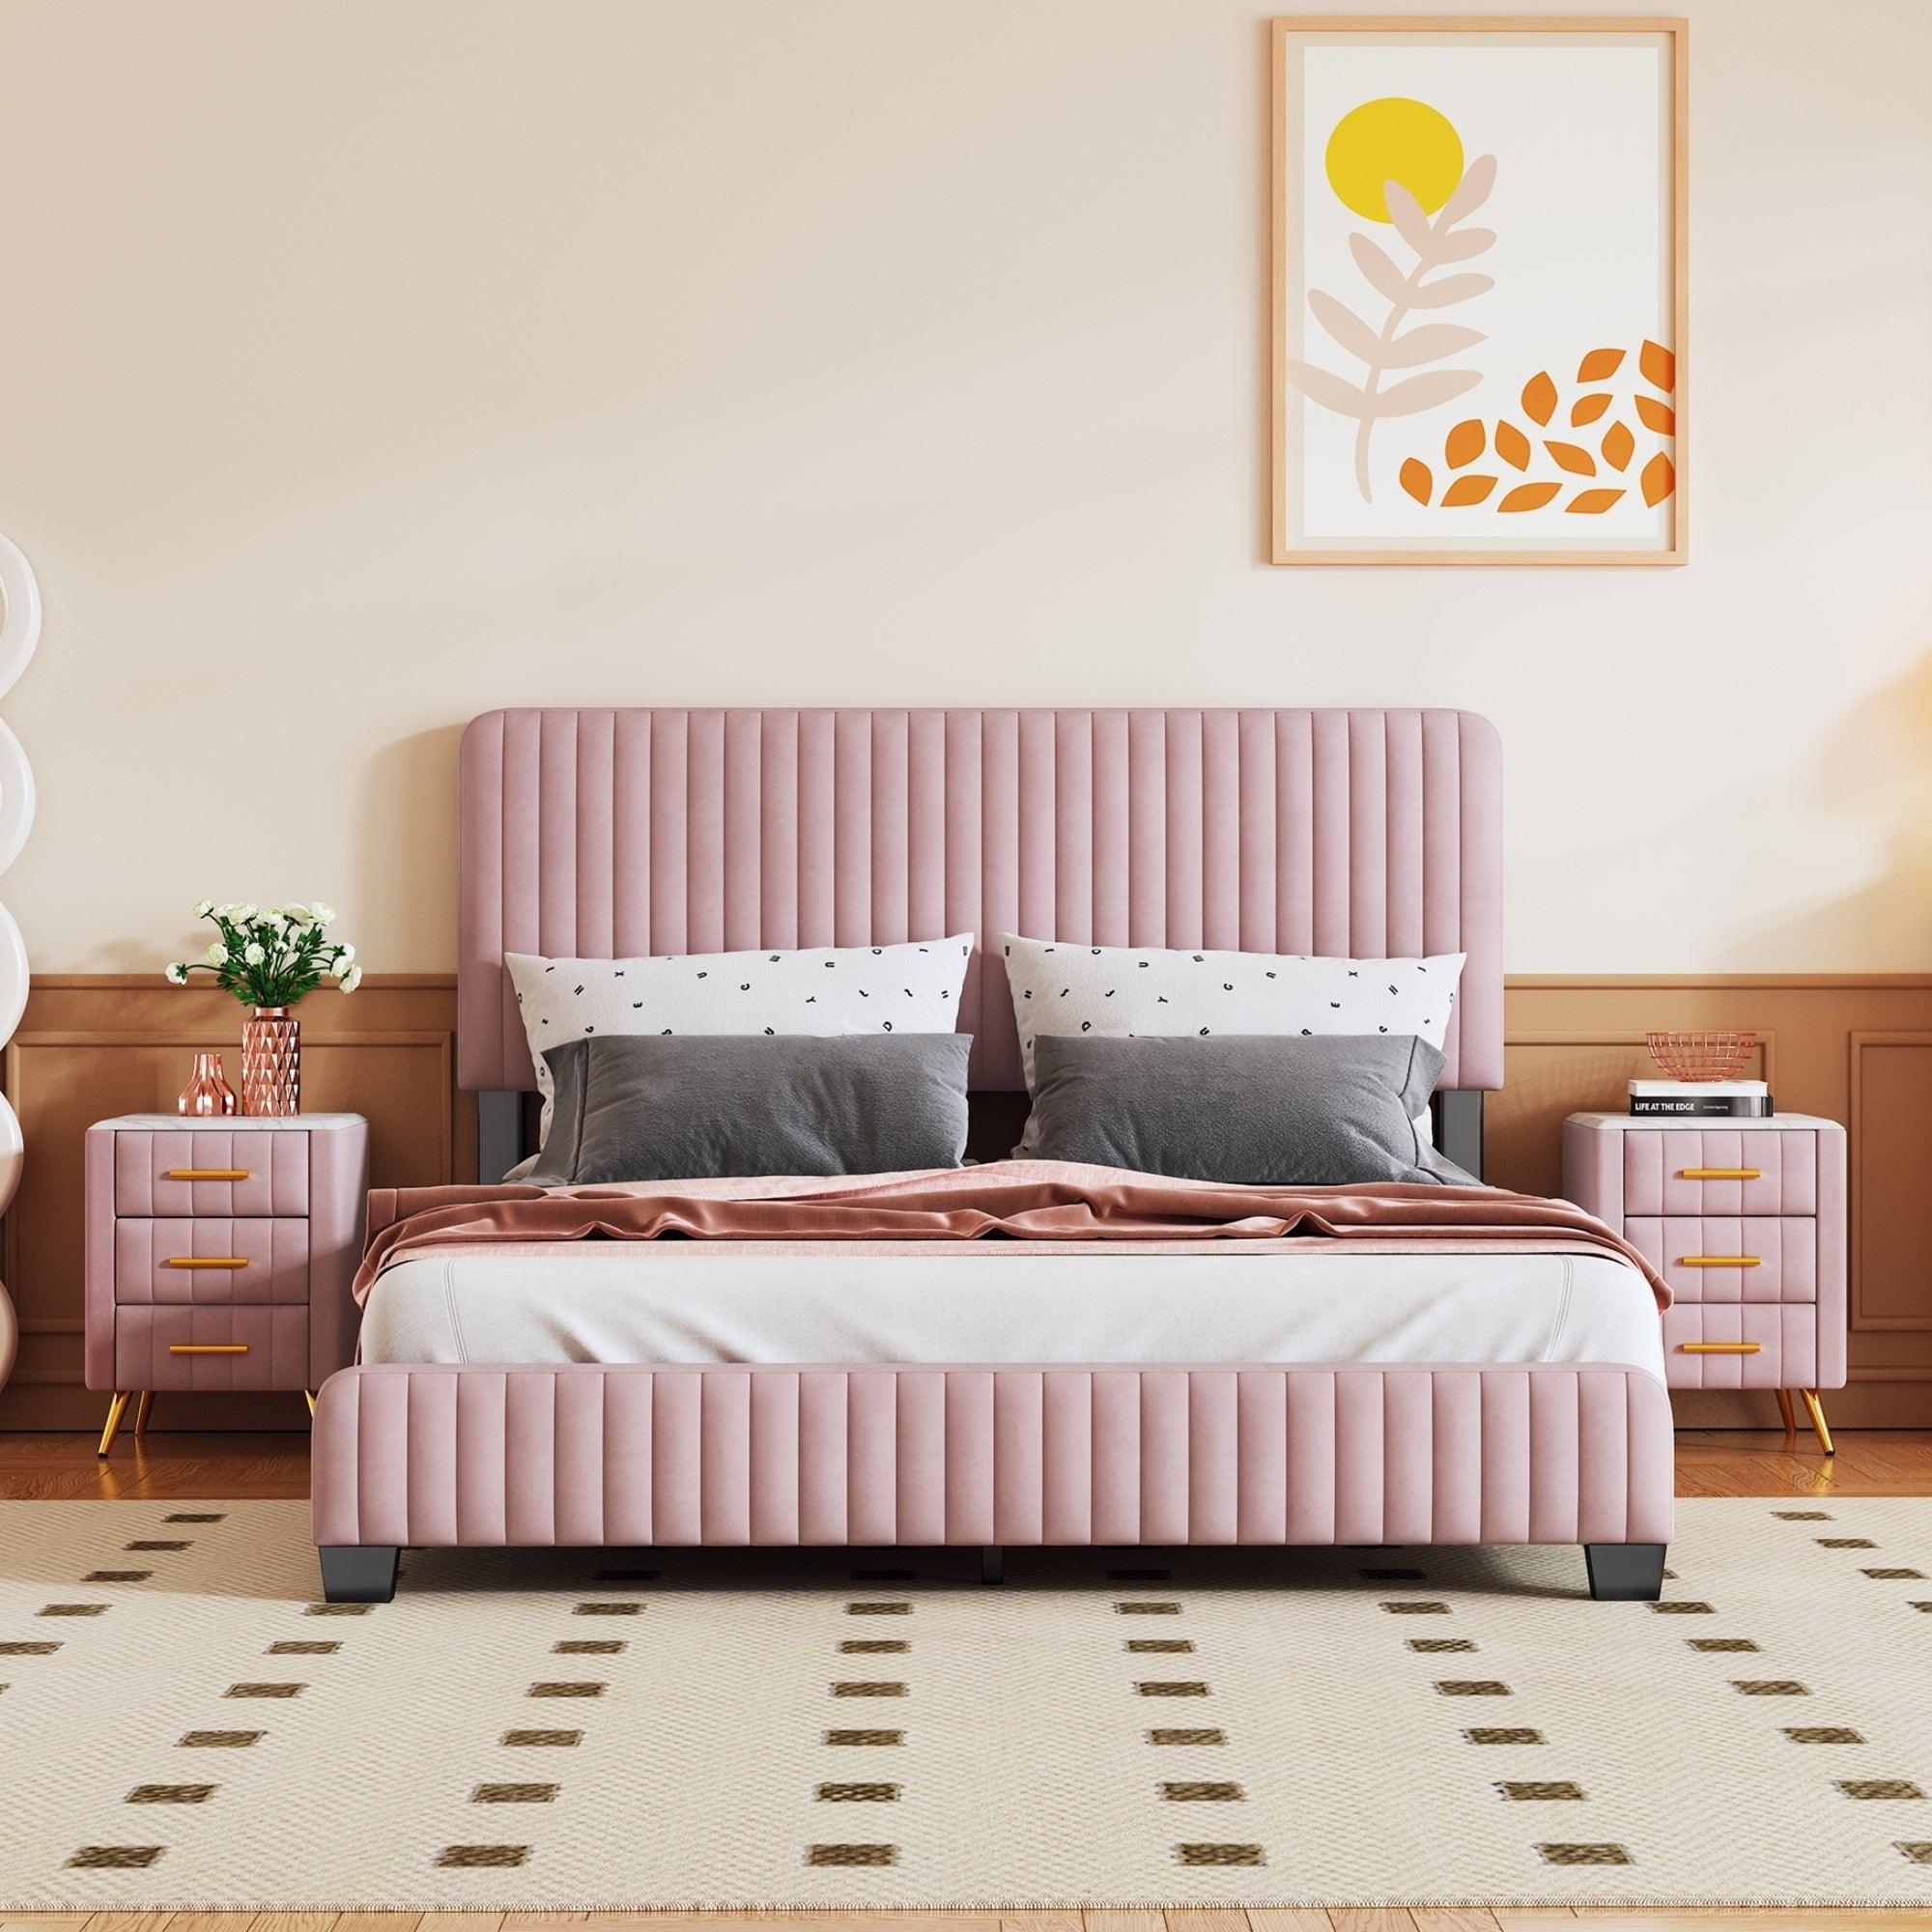 🆓🚛 3-Pieces Bedroom Sets, Queen Size Upholstered Platform Bed With Two Nightstands, Nightstands With Marbling Worktop & Metal Legs&Handles, Velvet, Pink